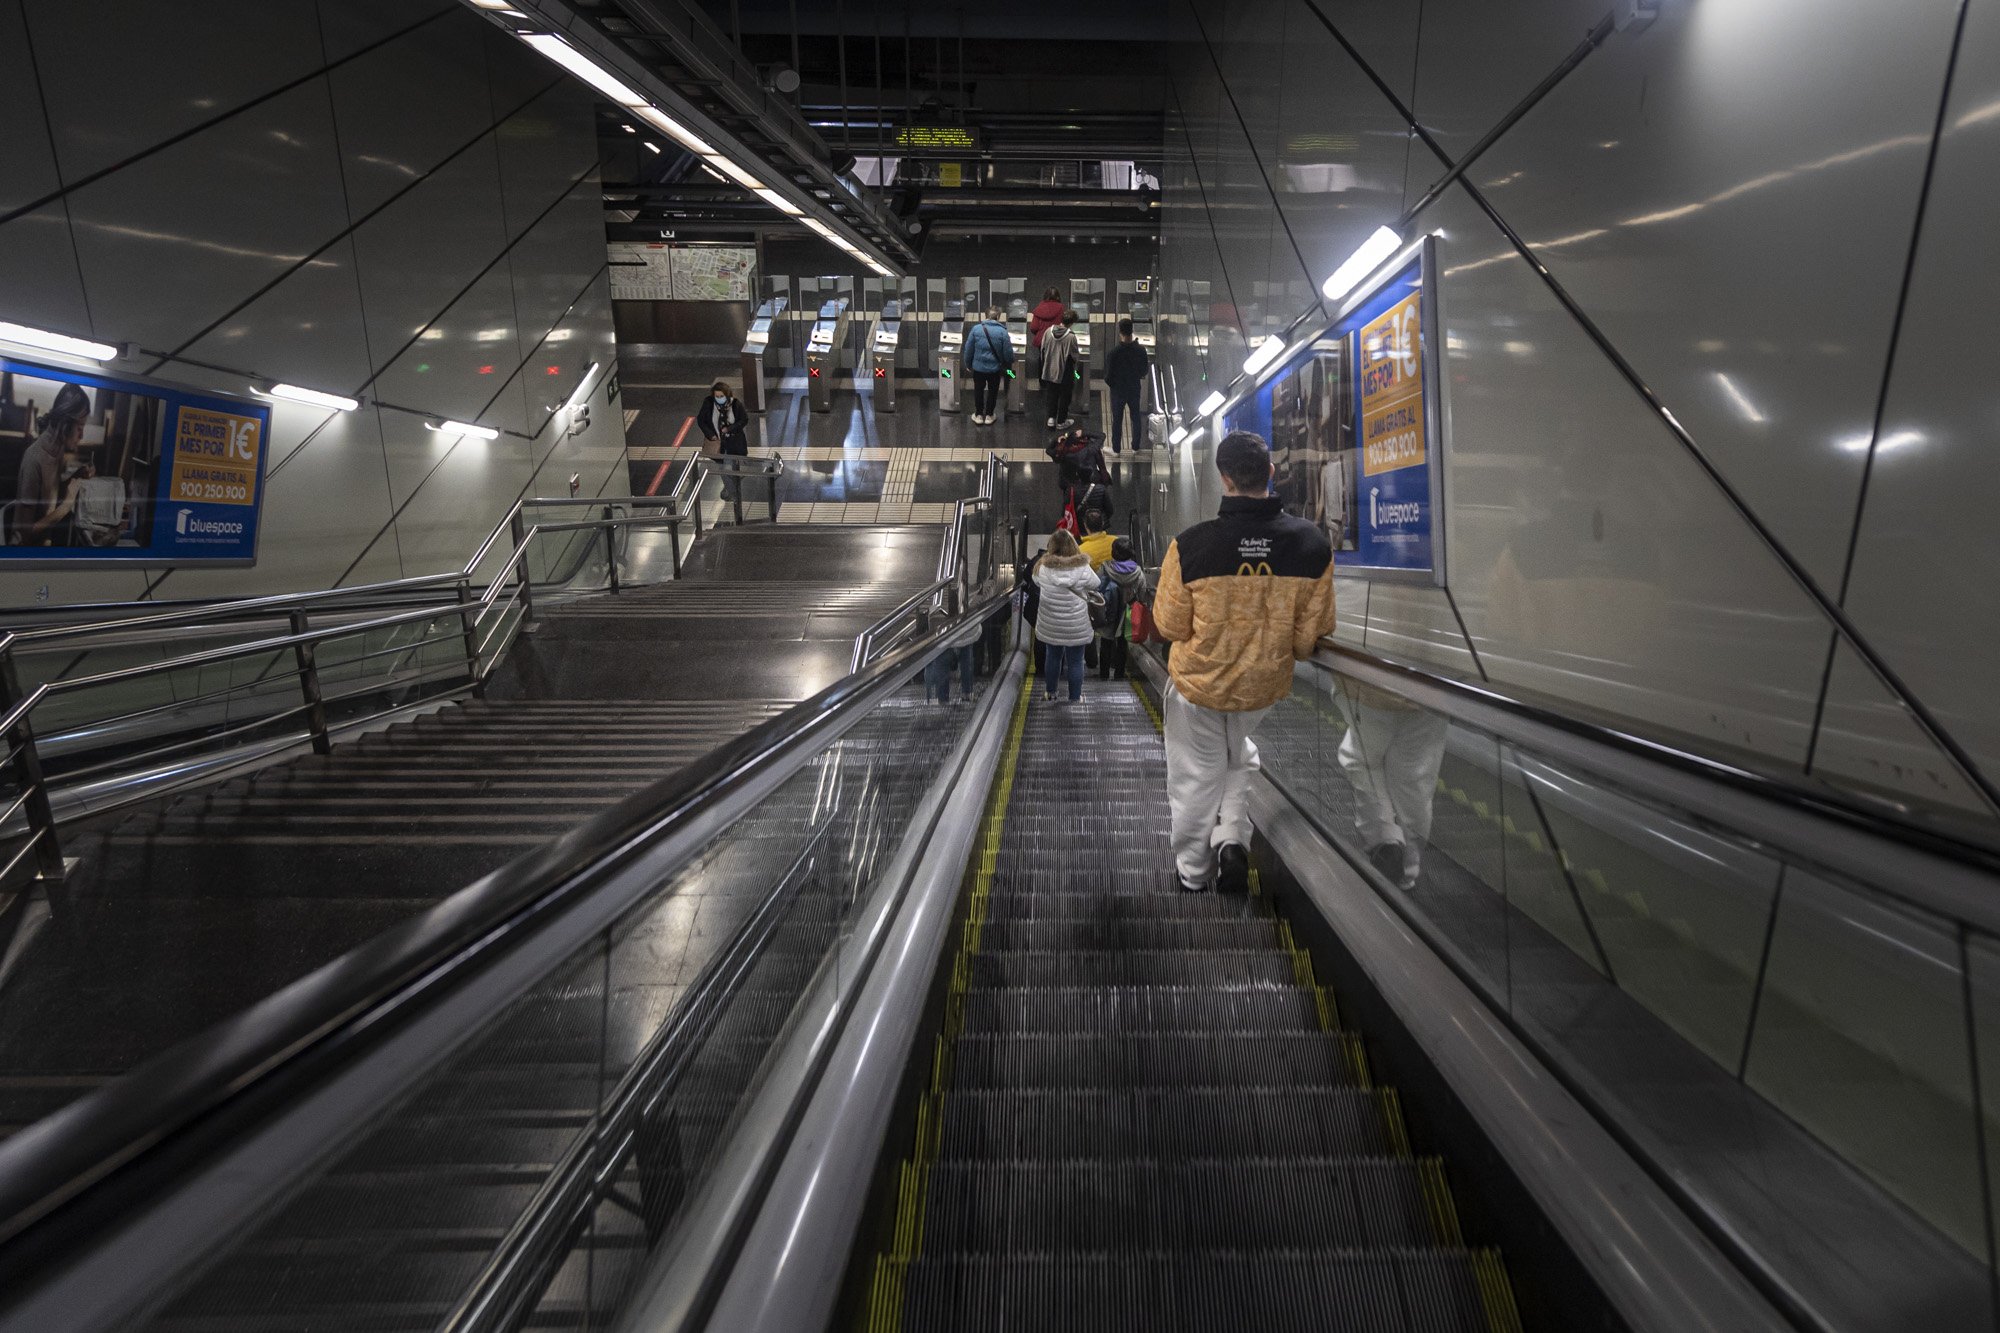 L’hipnòtic vídeo que desenvolupa el passat, present i futur del metro de Barcelona